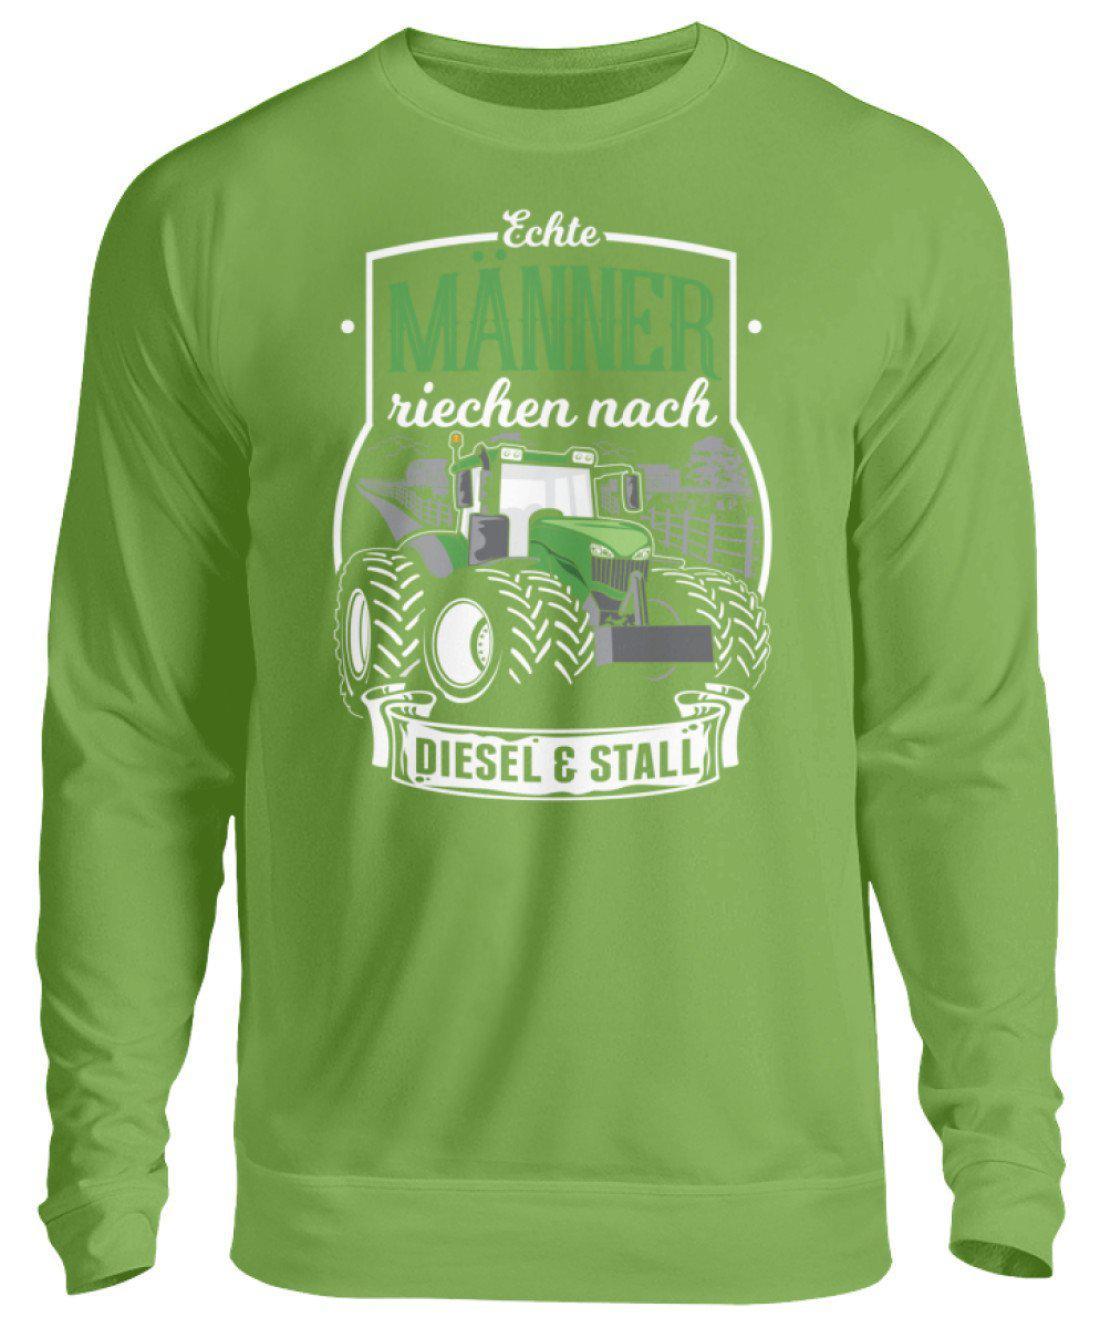 Männer Diesel und Stall · Unisex Sweatshirt Pullover-Unisex Sweatshirt-LimeGreen-S-Agrarstarz